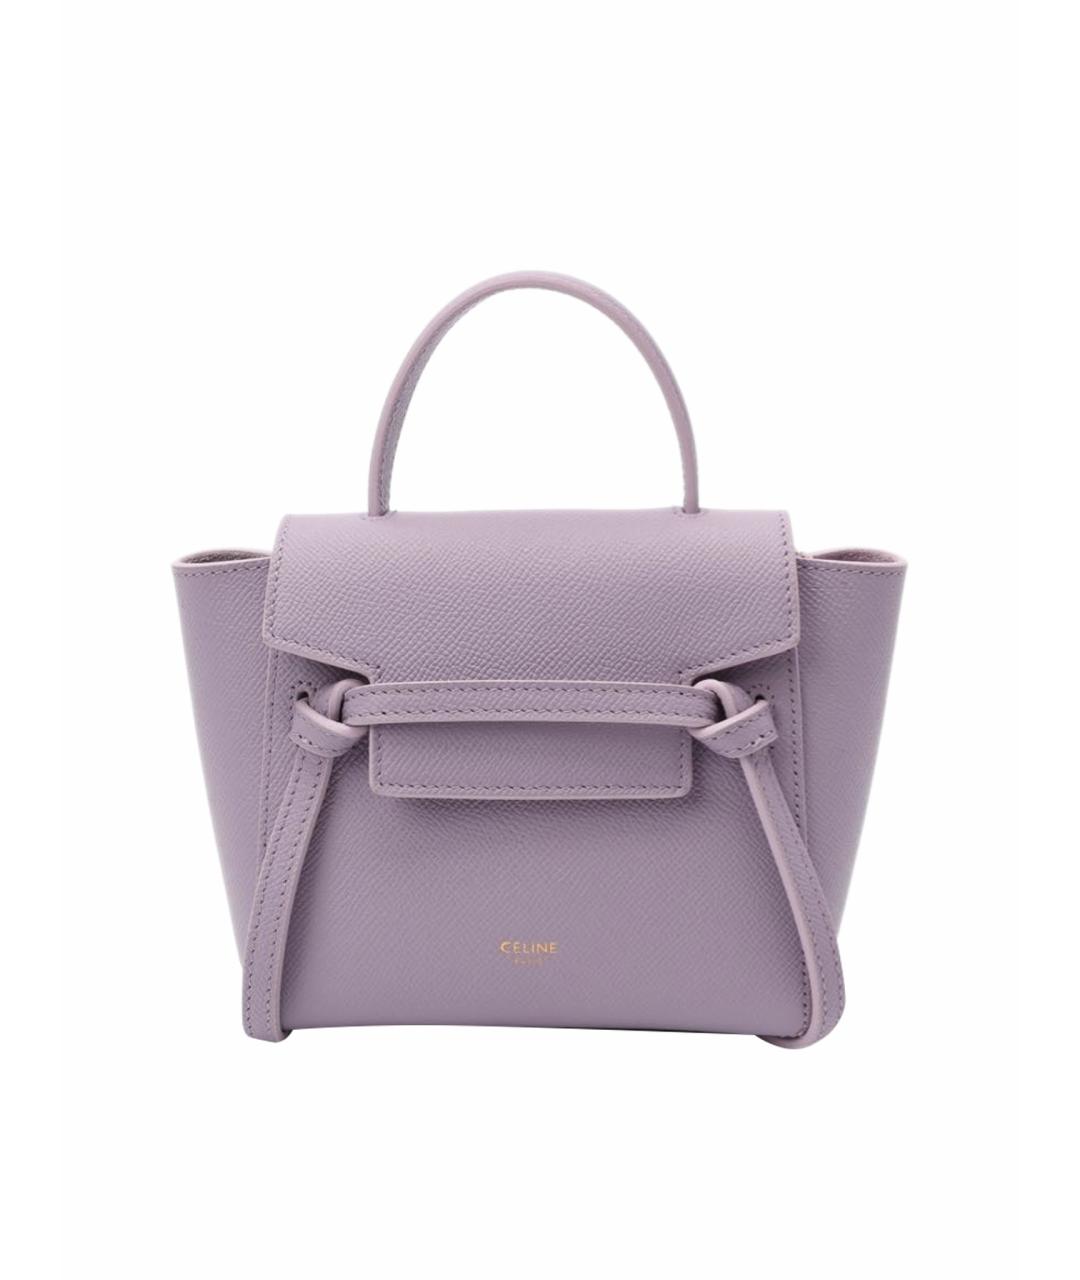 CELINE Фиолетовая кожаная сумка с короткими ручками, фото 1